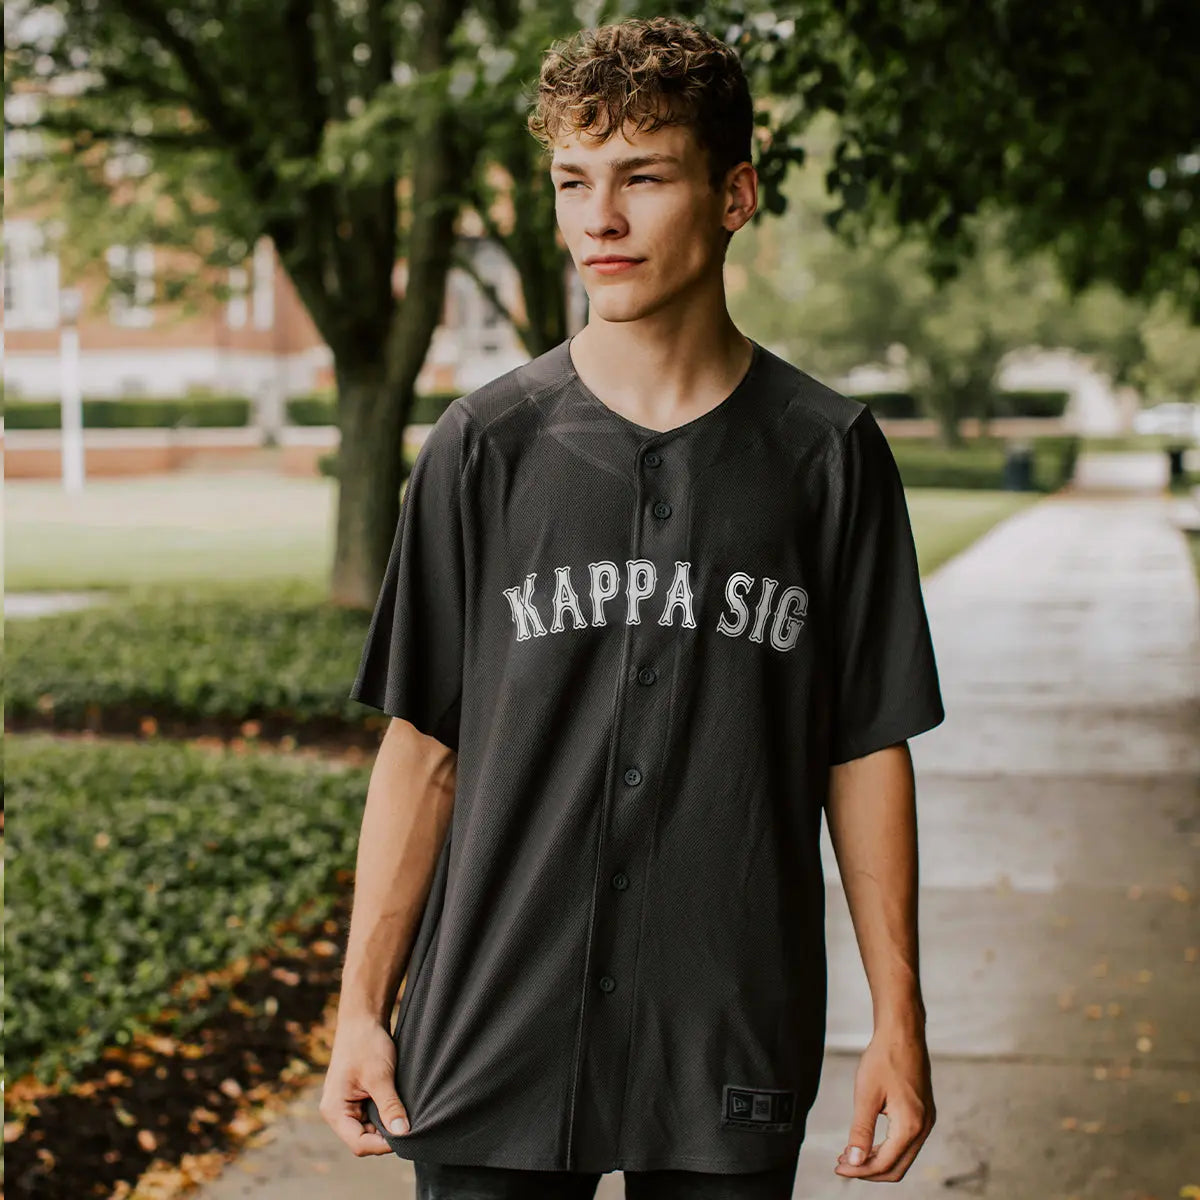 Kappa Sig Personalized New Era Graphite Baseball Jersey - Kappa Sigma Official Store